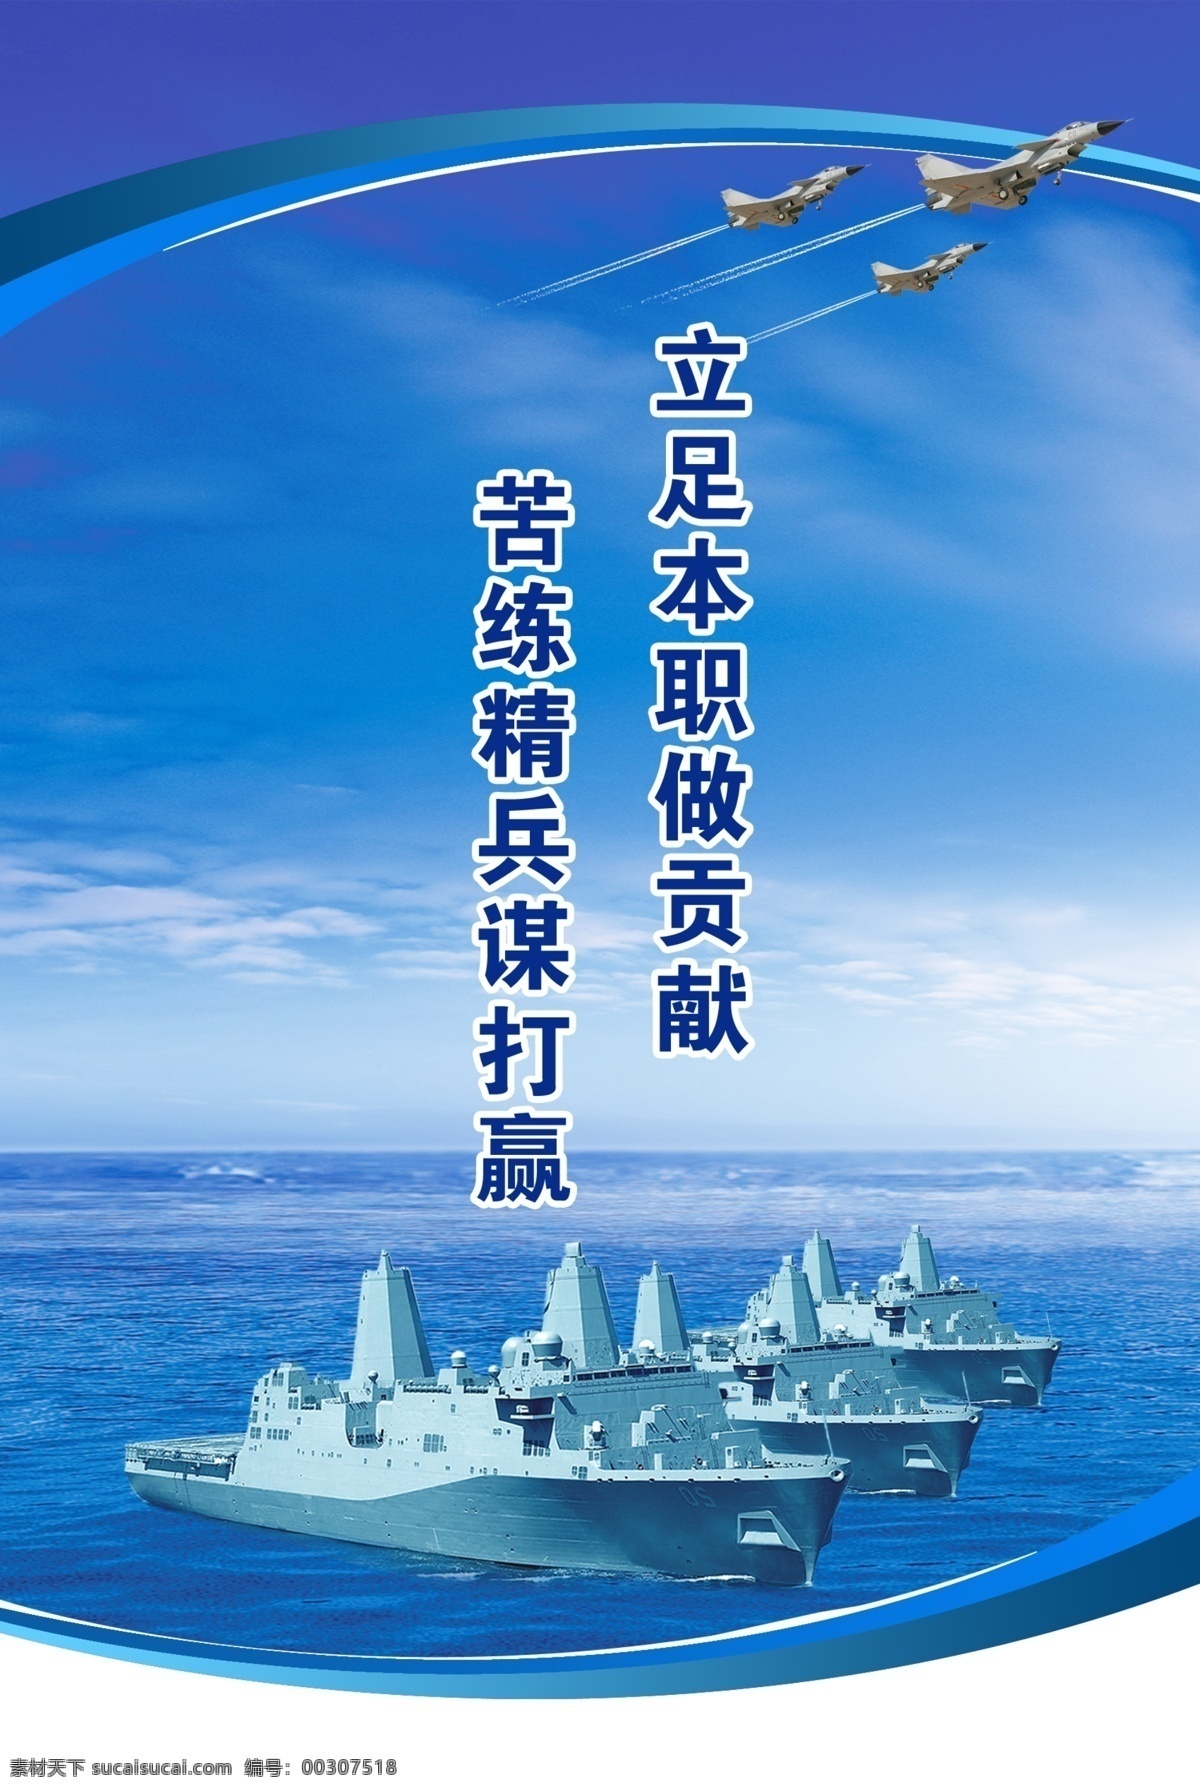 部队宣传口号 部队 海军 宣传口号 舰艇 战斗机 天空 大海 广告设计模板 源文件